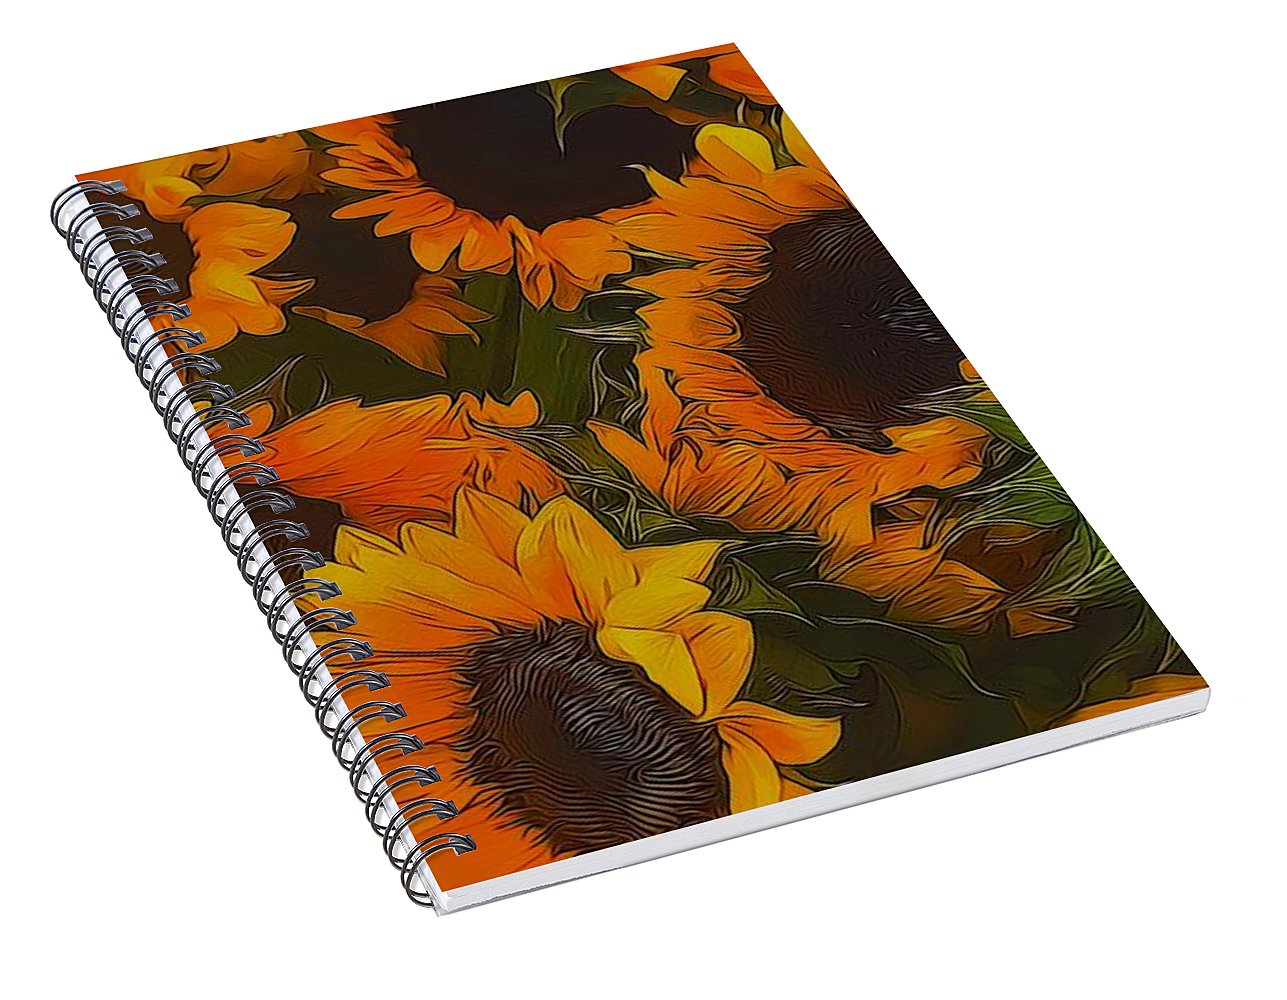 Sunflowers - Spiral Notebook